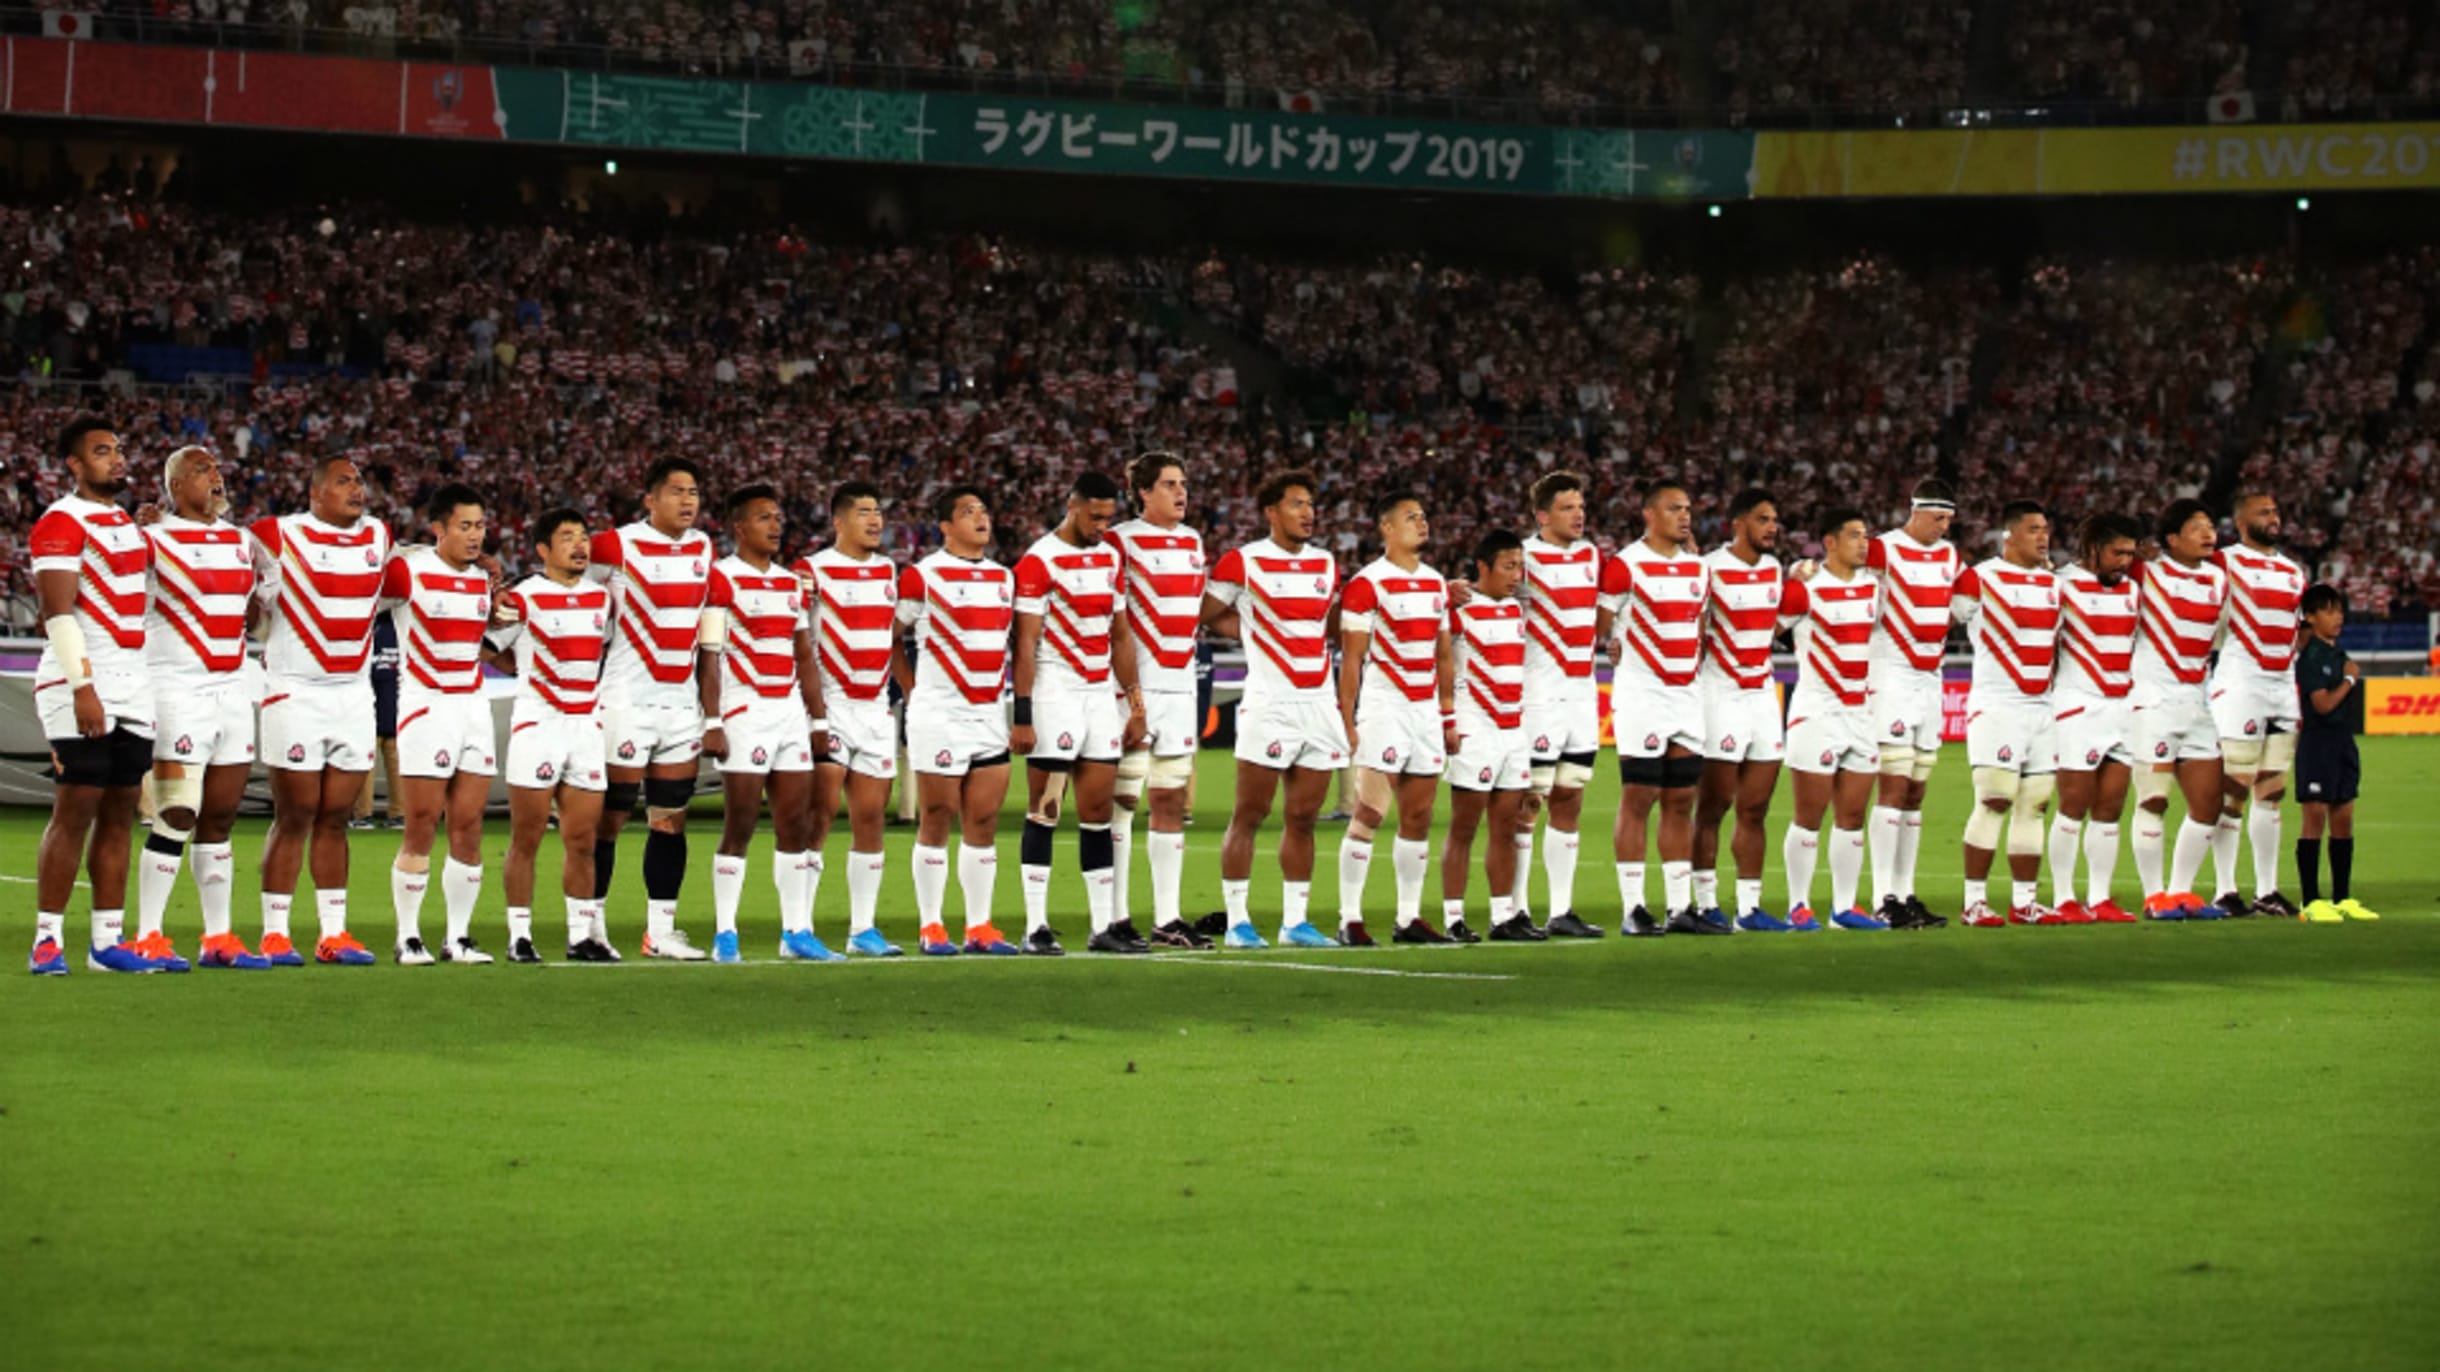 Sサイズ ラグビー ワールドカップ 2019 日本代表 ユニフォーム-